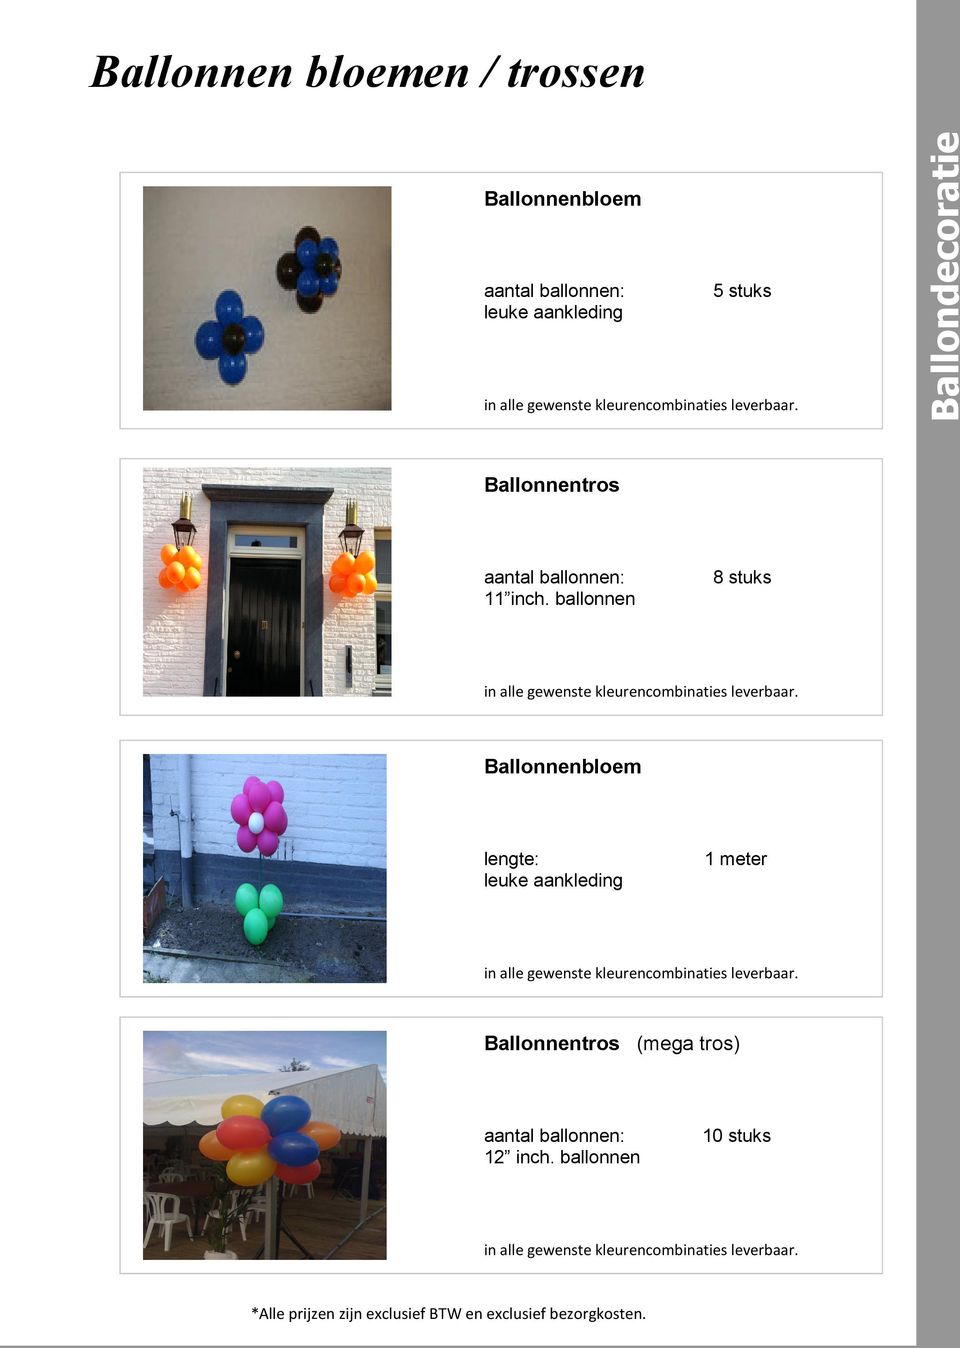 ballonnen 8 stuks Ballonnenbloem leuke aankleding 1 meter